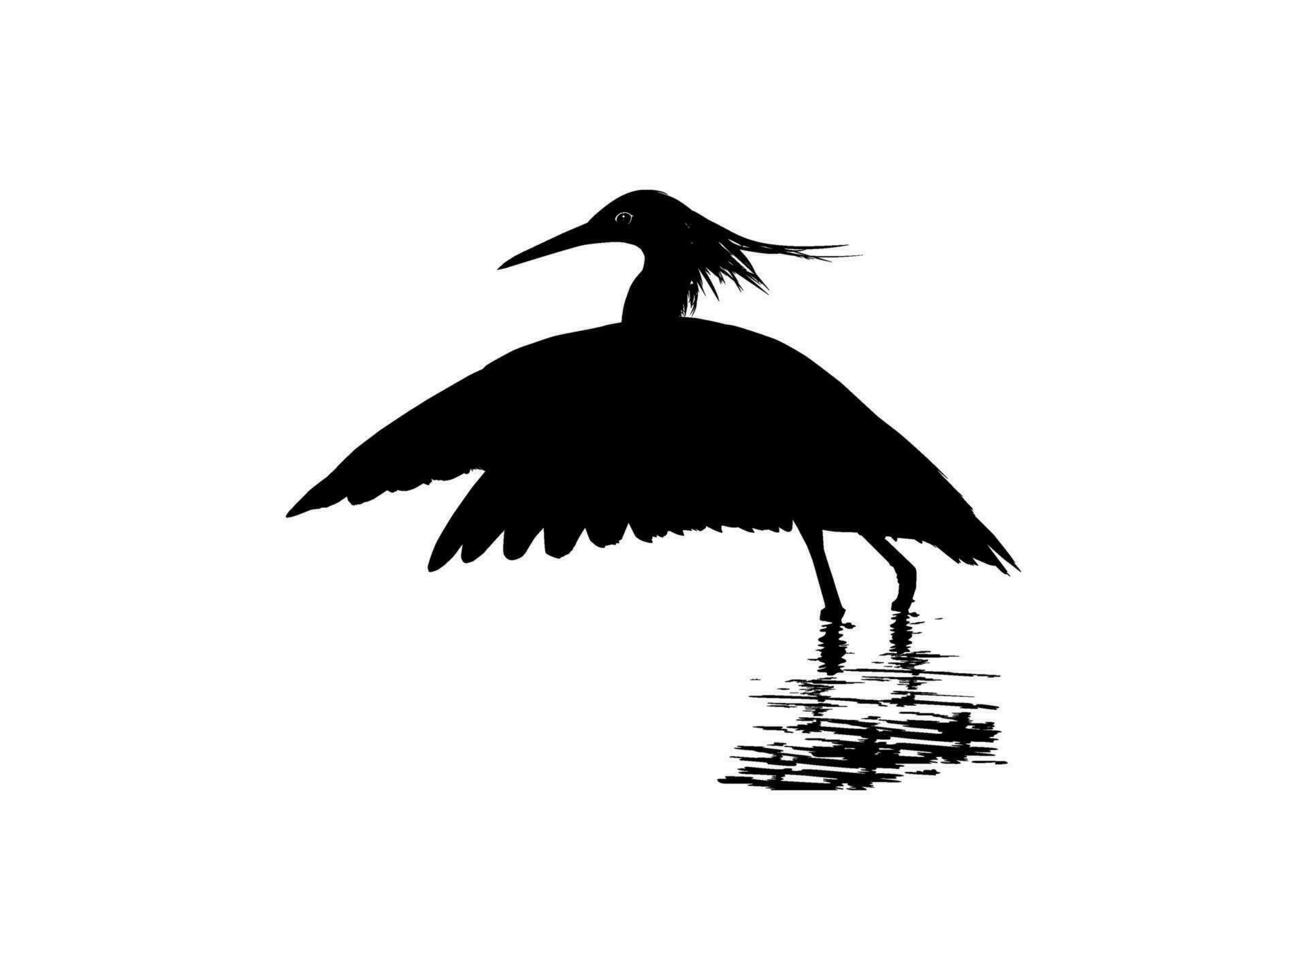 le noir héron oiseau, egretta ardesiaca, aussi connu comme le noir aigrette silhouette pour art illustration, logo, pictogramme, site Internet, ou graphique conception élément. vecteur illustration